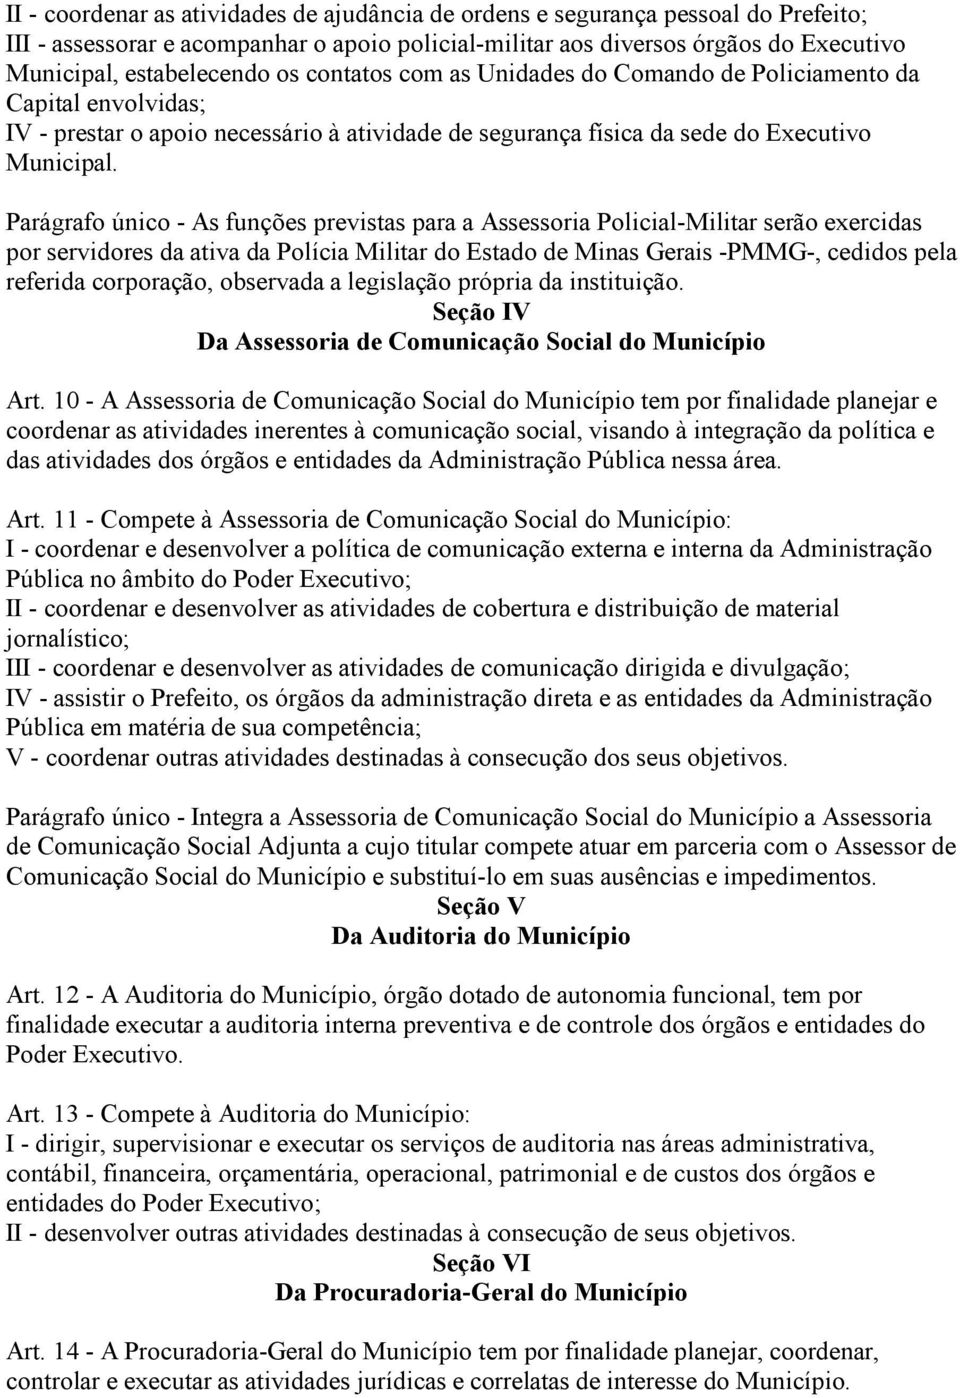 Parágrafo único - As funções previstas para a Assessoria Policial-Militar serão exercidas por servidores da ativa da Polícia Militar do Estado de Minas Gerais -PMMG-, cedidos pela referida